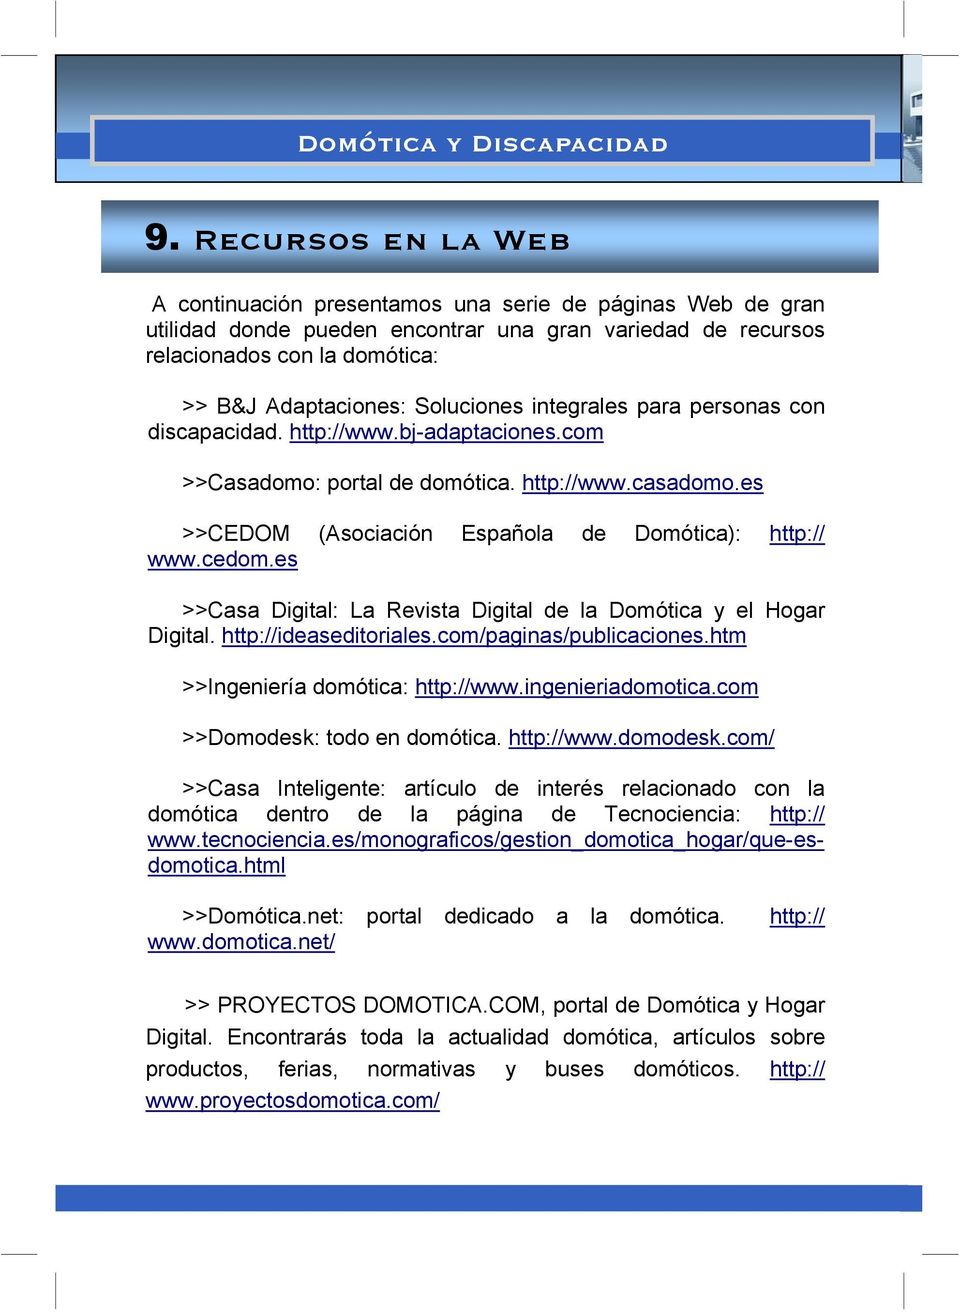 Soluciones integrales para personas con discapacidad. http://www.bj-adaptaciones.com >>Casadomo: portal de domótica. http://www.casadomo.es >>CEDOM (Asociación Española de Domótica): http:// www.